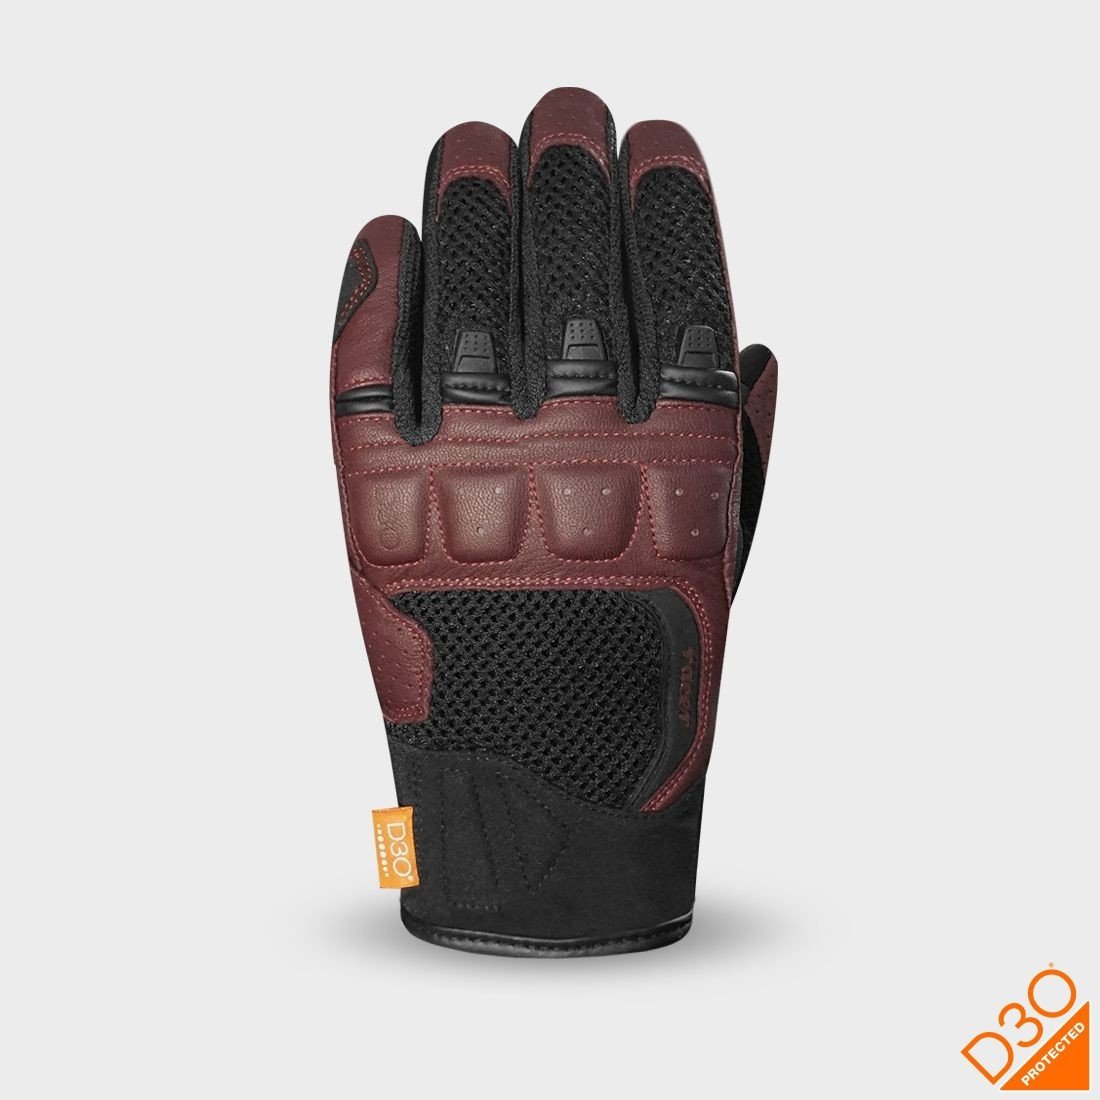 RACER RONIN rukavice dámské černá/červená burgundy XL